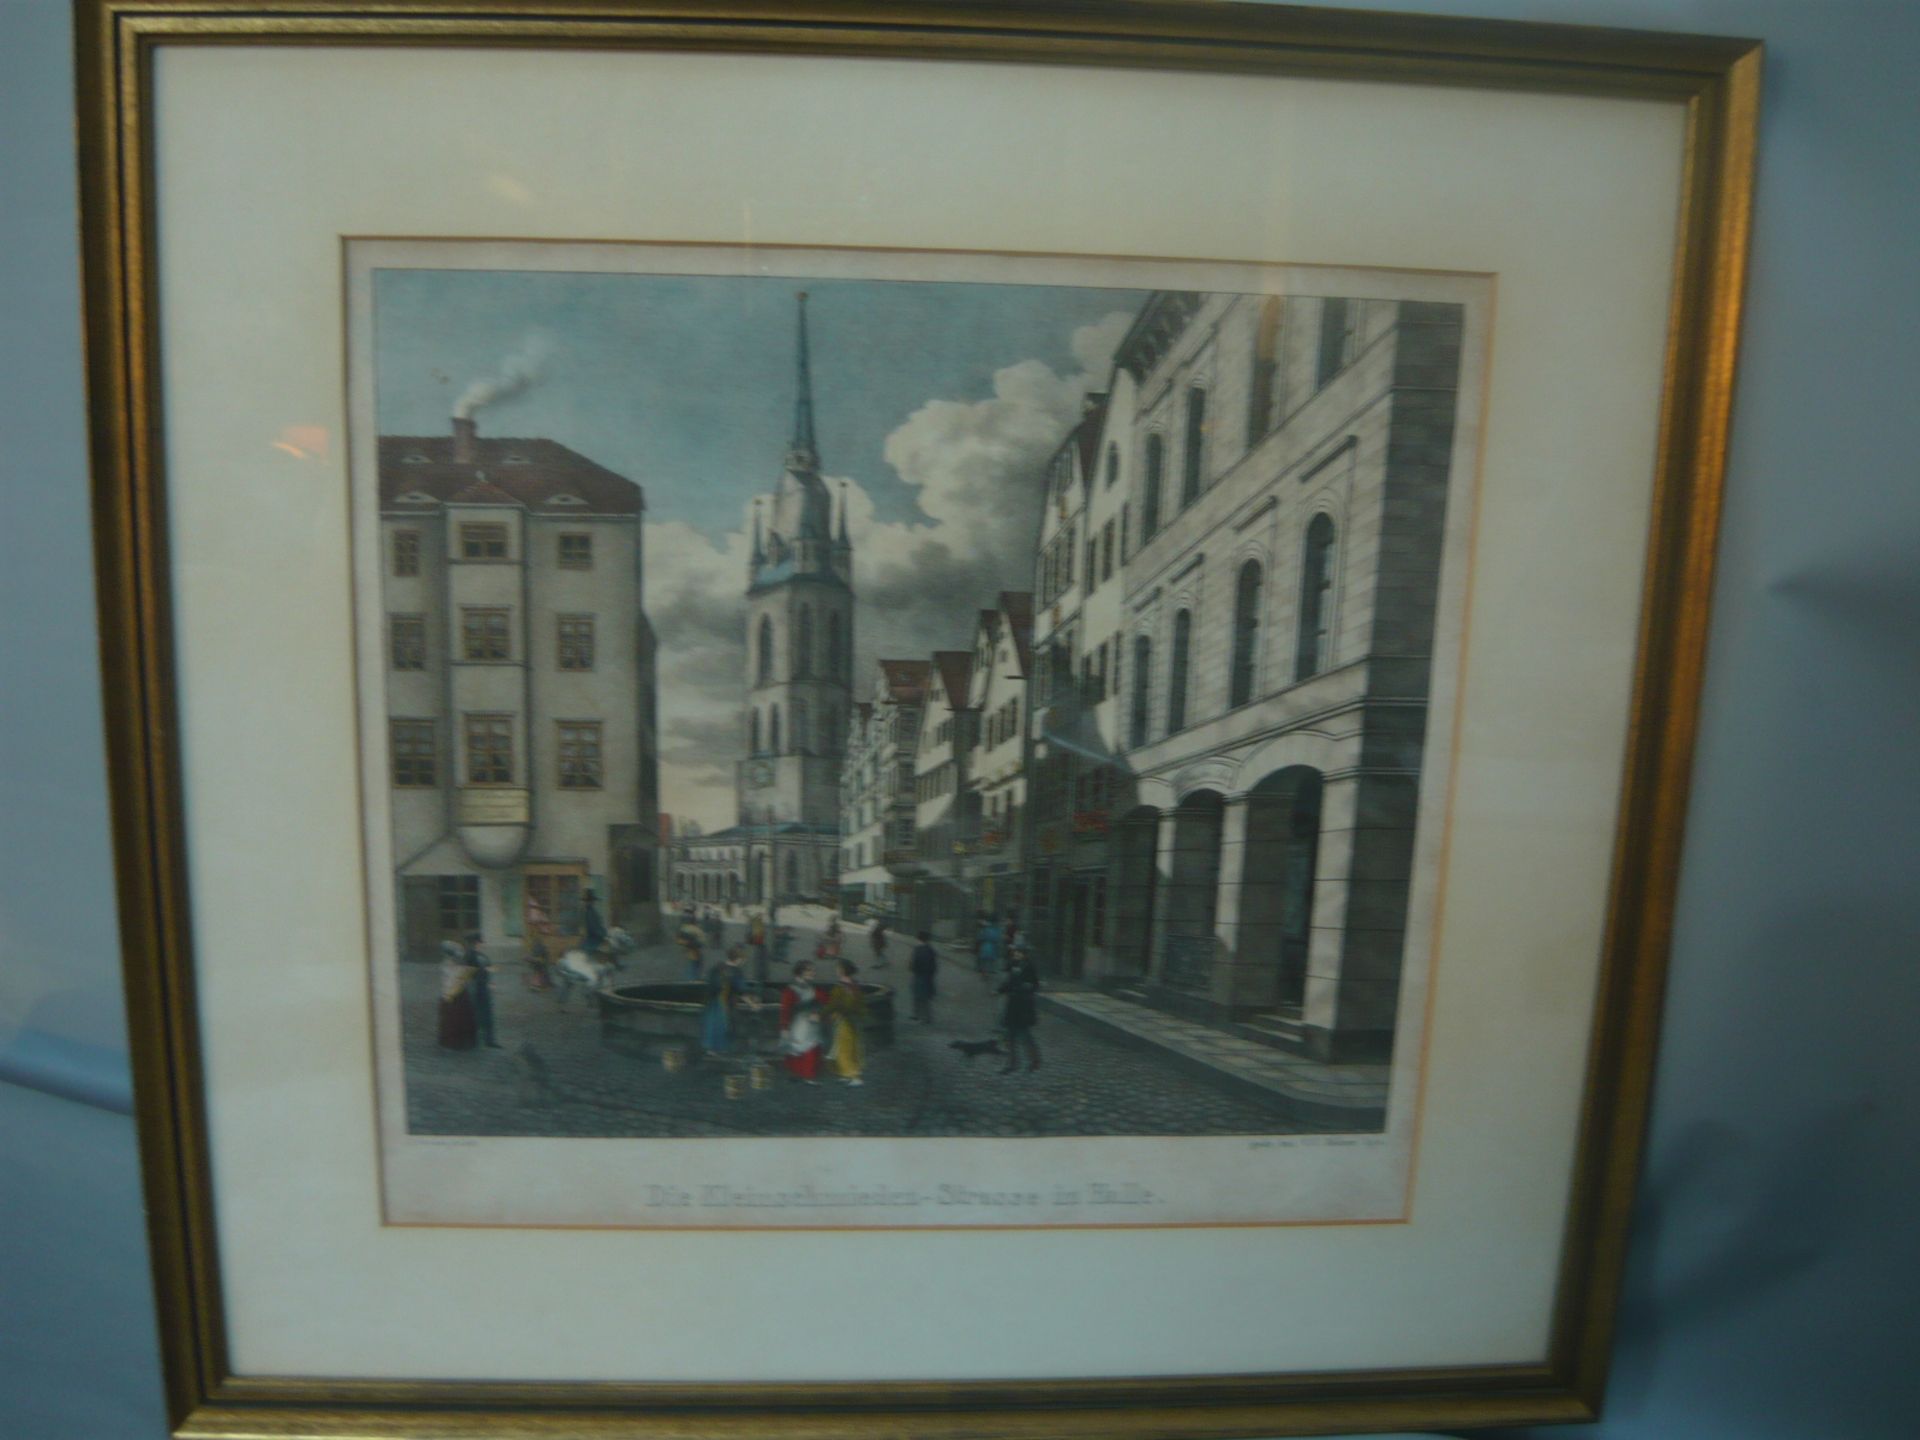 Die Kleinschmieden-Strasse in Halle, Sachsen. Nach A.Gerlach 1844, gestochen bei C.C.Böhme in